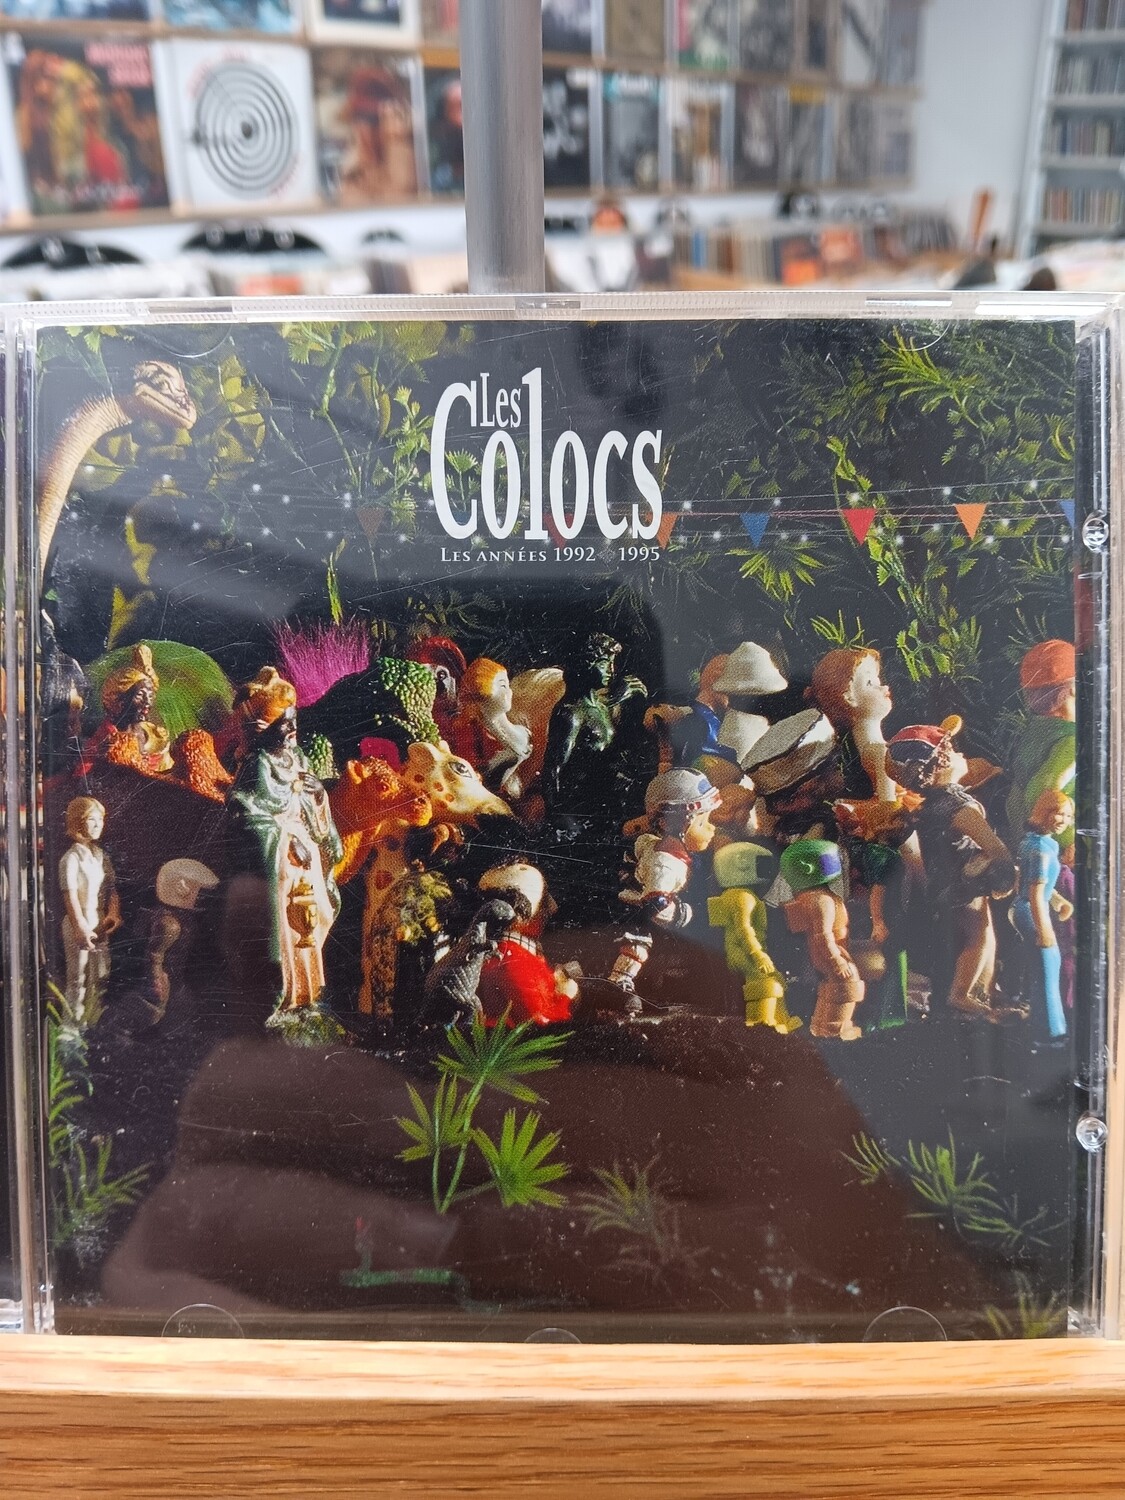 LES COLOCS - Les années 1992-1995 (CD)